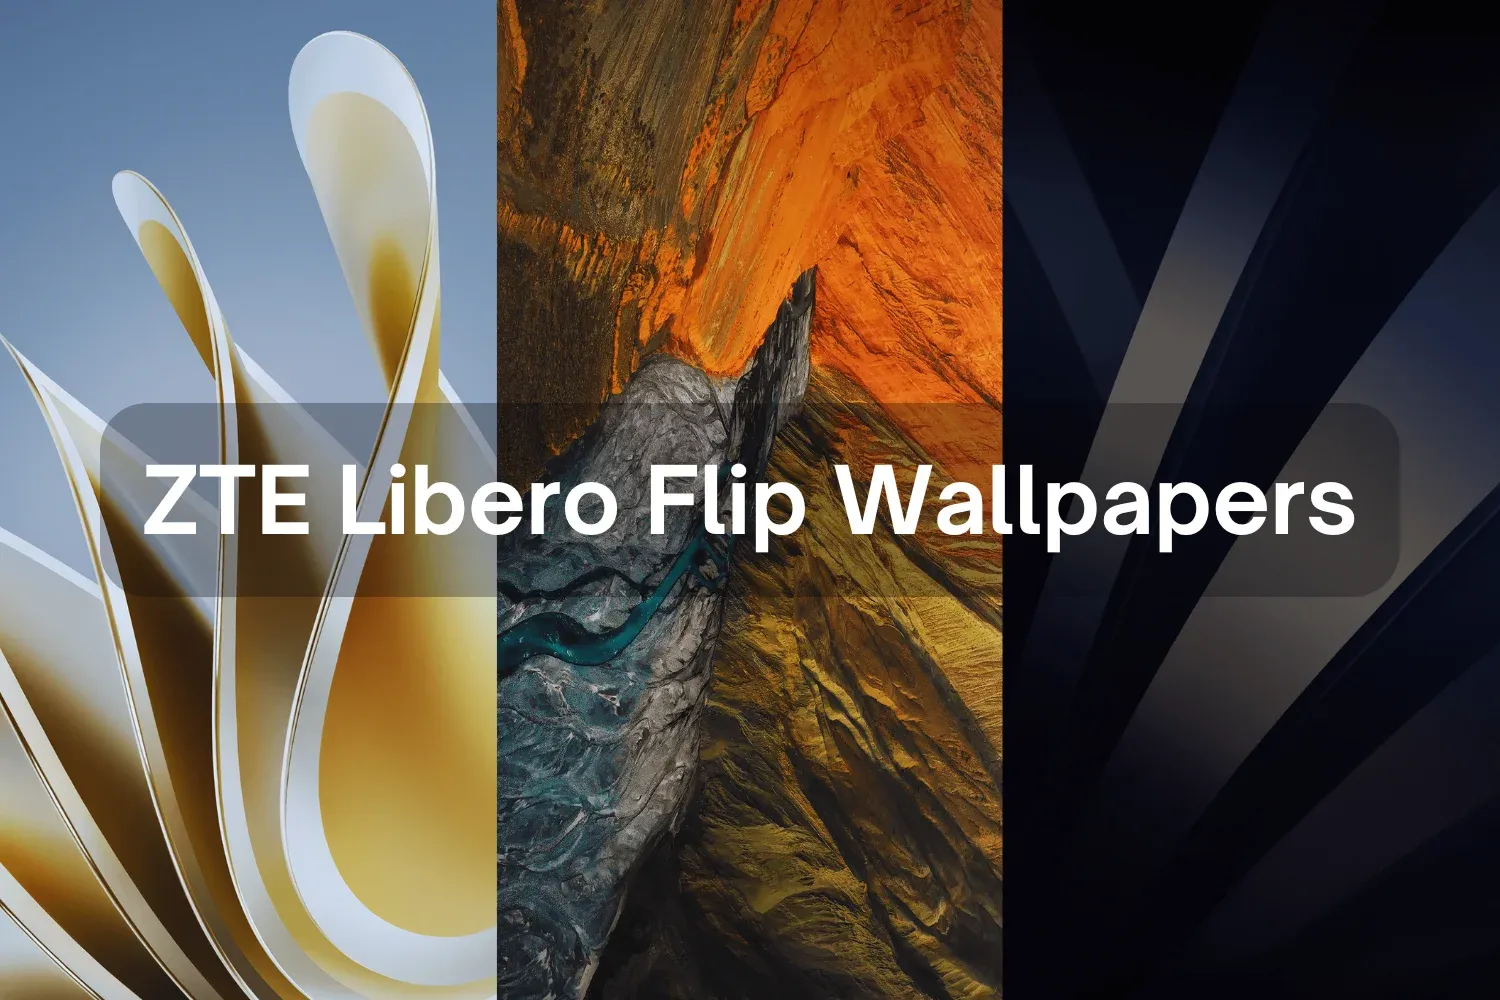 Download ZTE Libero Flip Wallpapers in FHD+